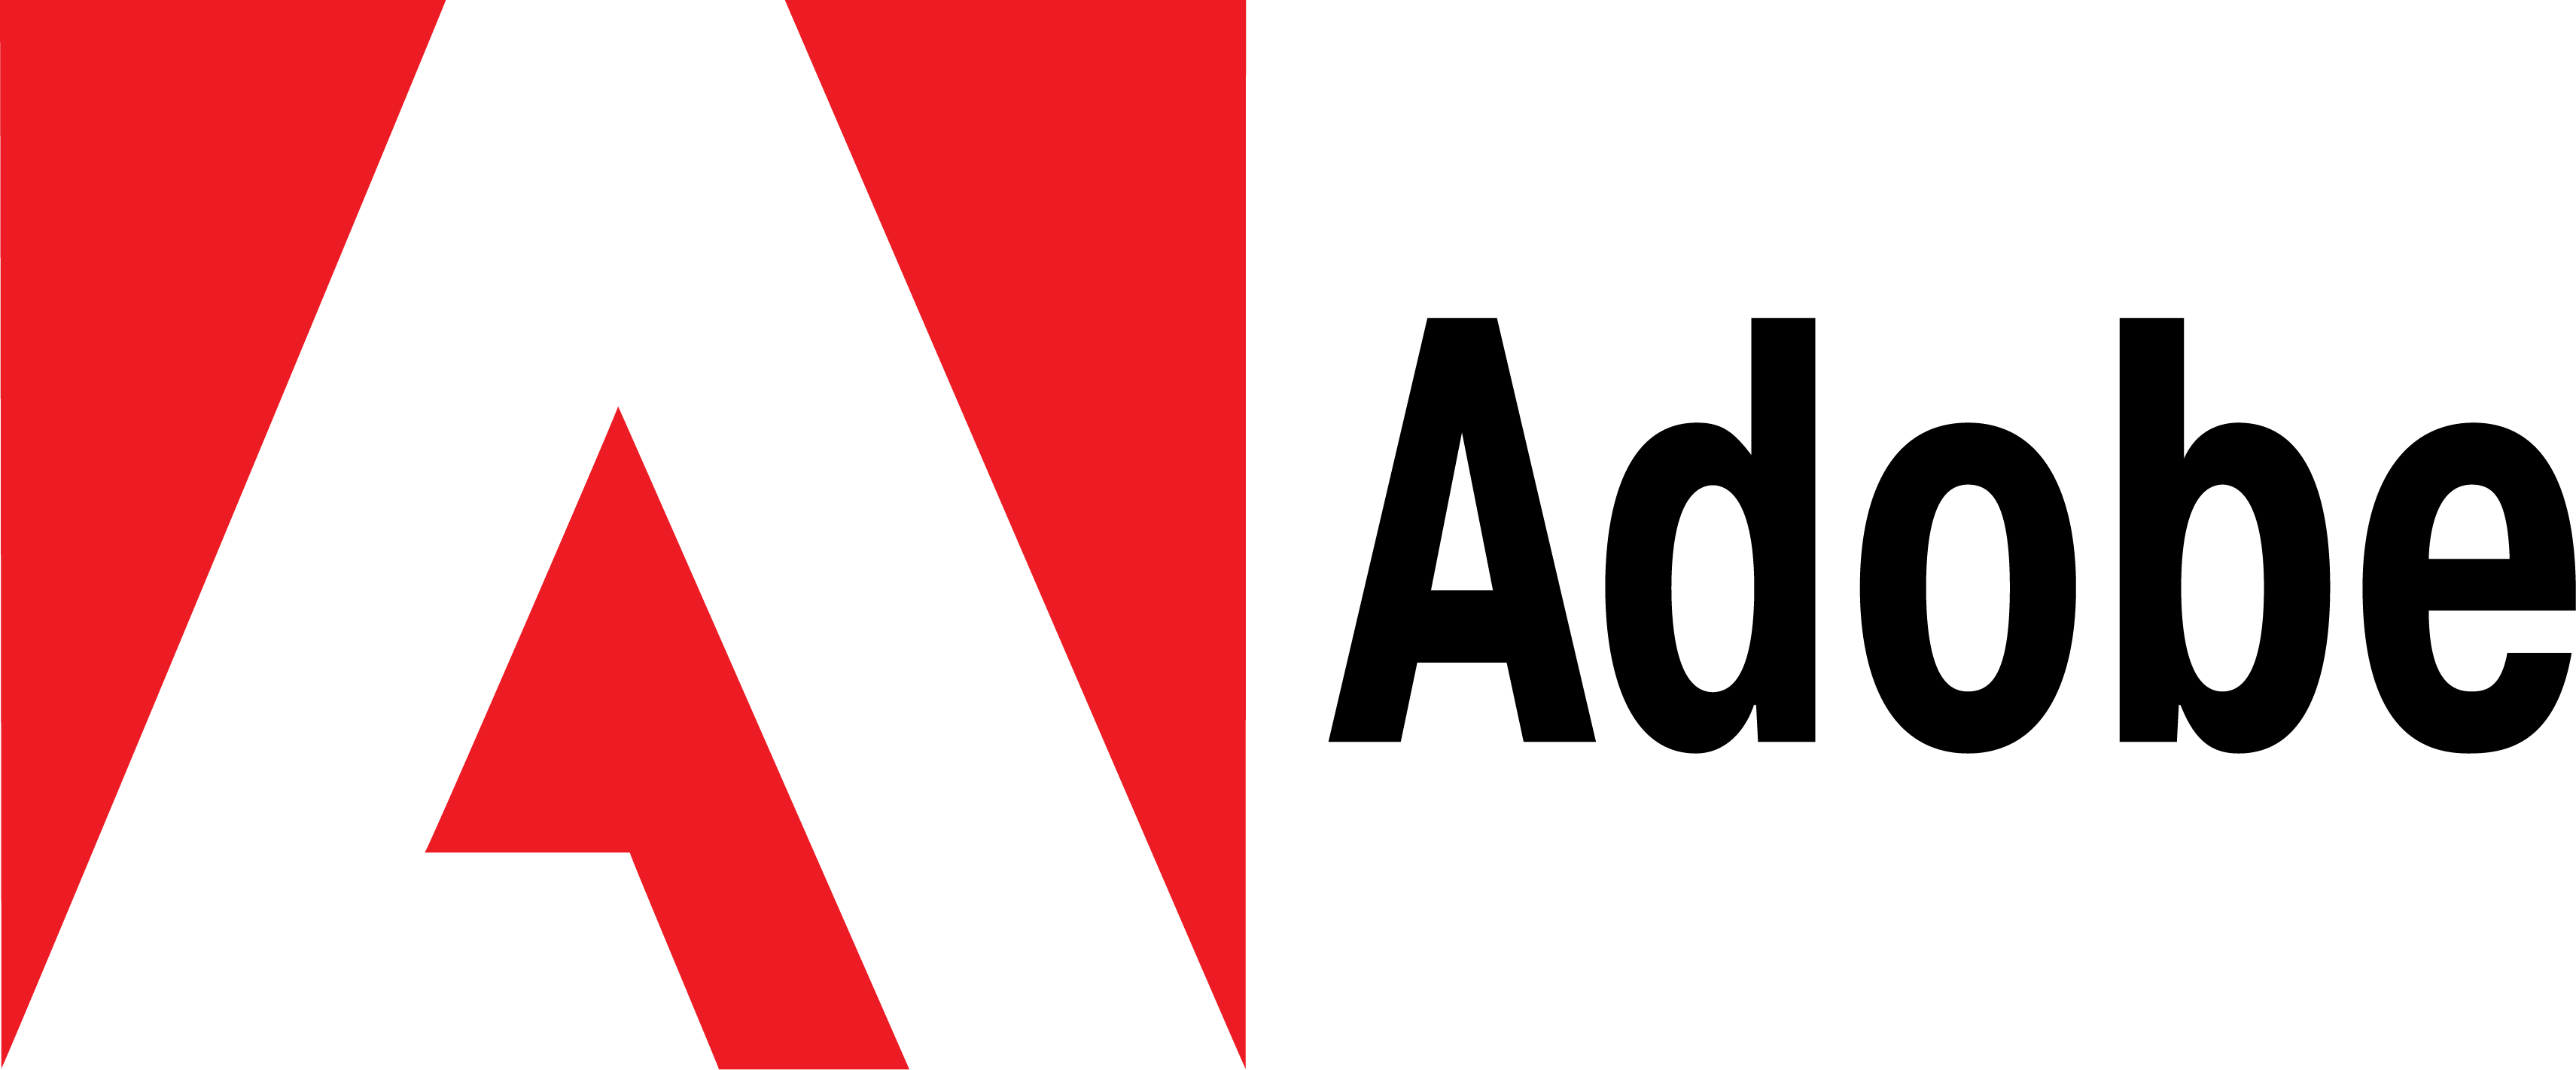 Adobe-Logos.png